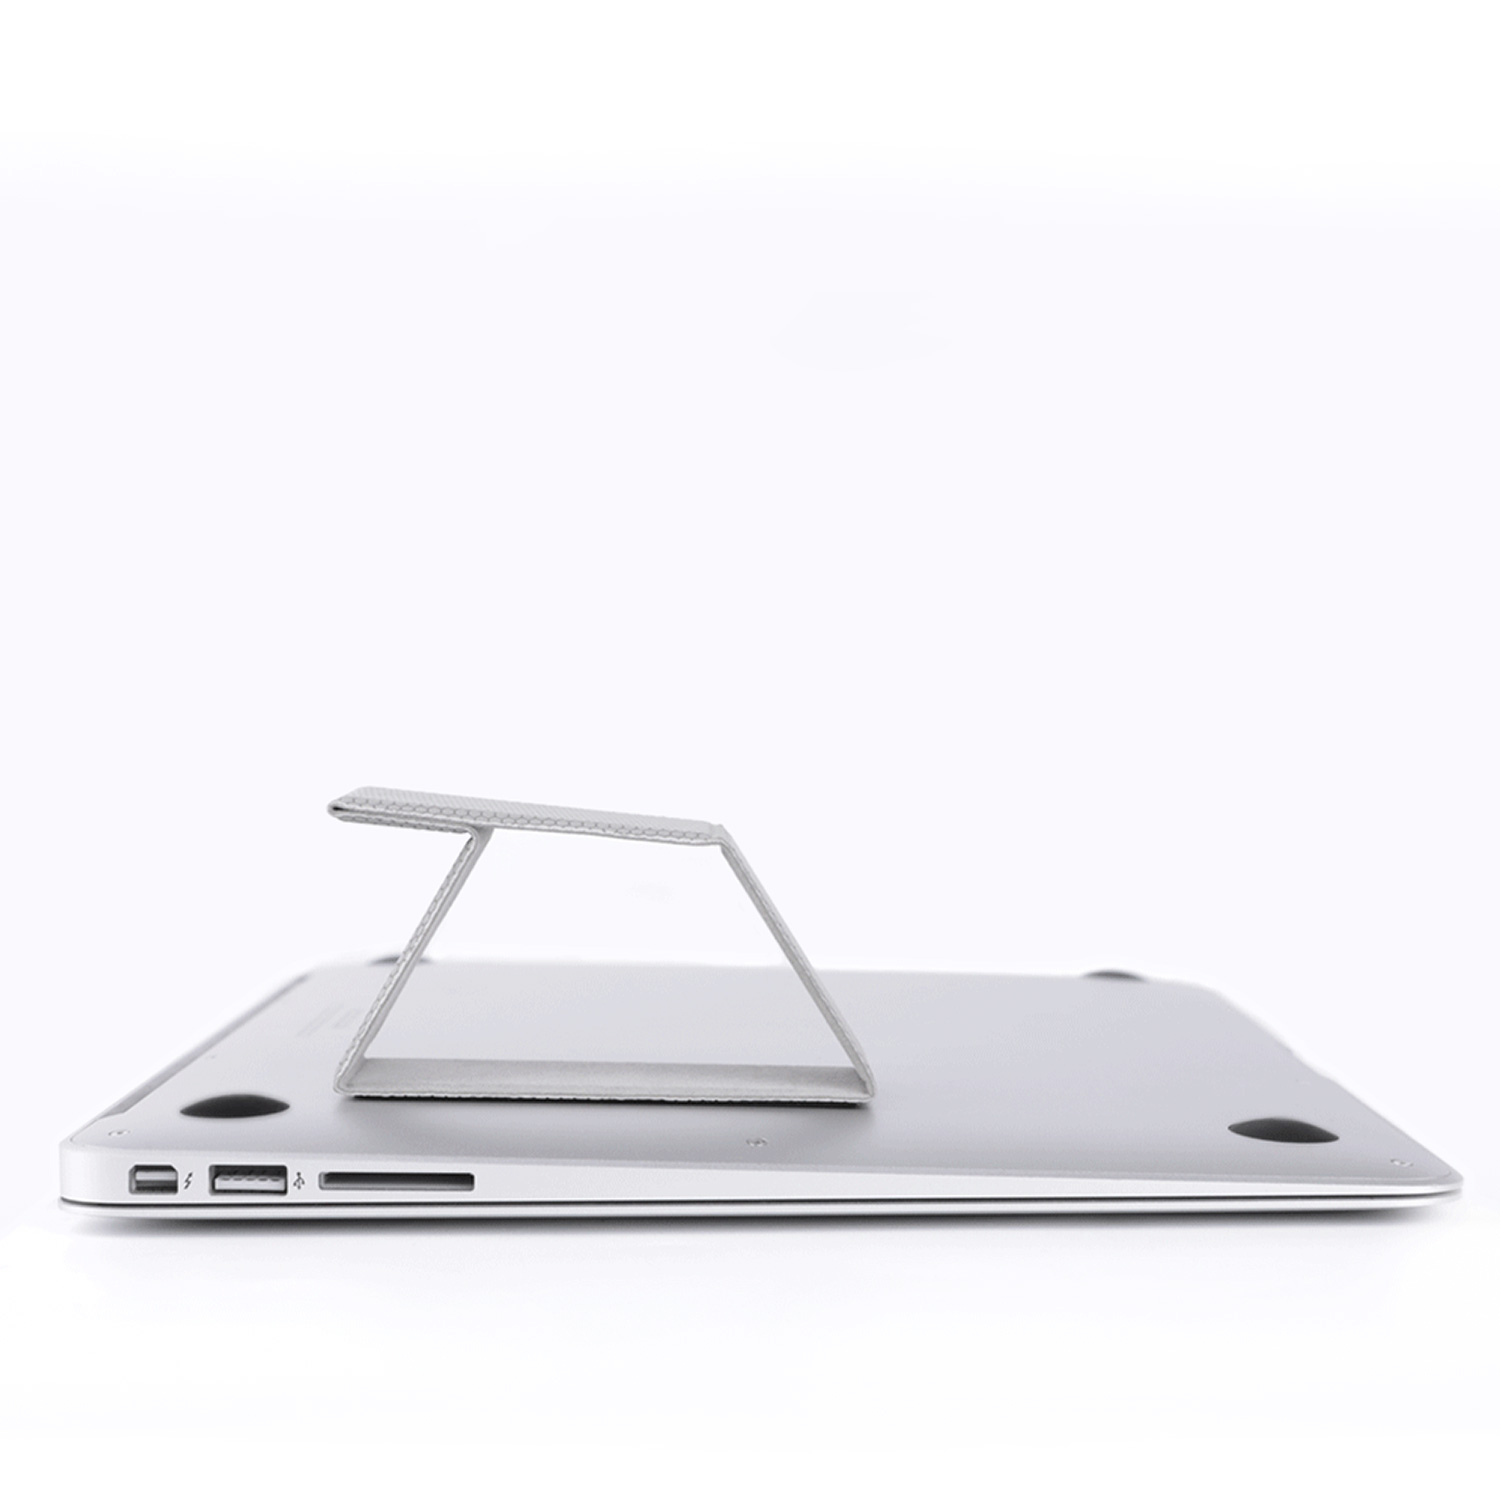 Podstawka pod laptopa  Nillkin Ascent Stand Mini - Właściwa pozycja ciała w czasie pracy przy komputerze